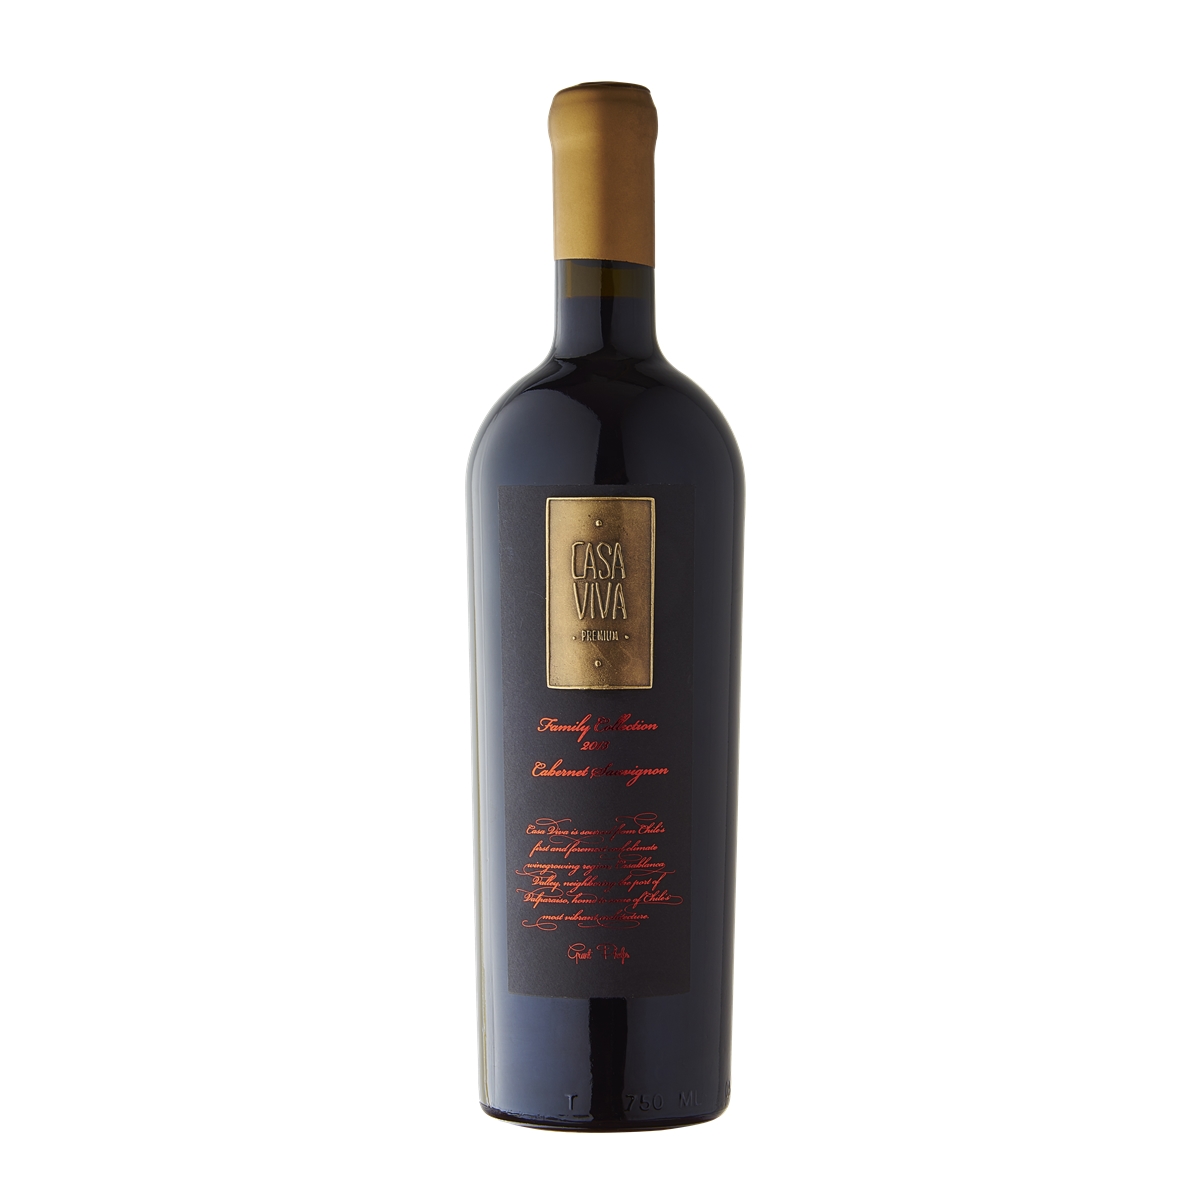 智利蘭佩谷卡薩天堂赤霞珠家族珍藏干紅葡萄酒